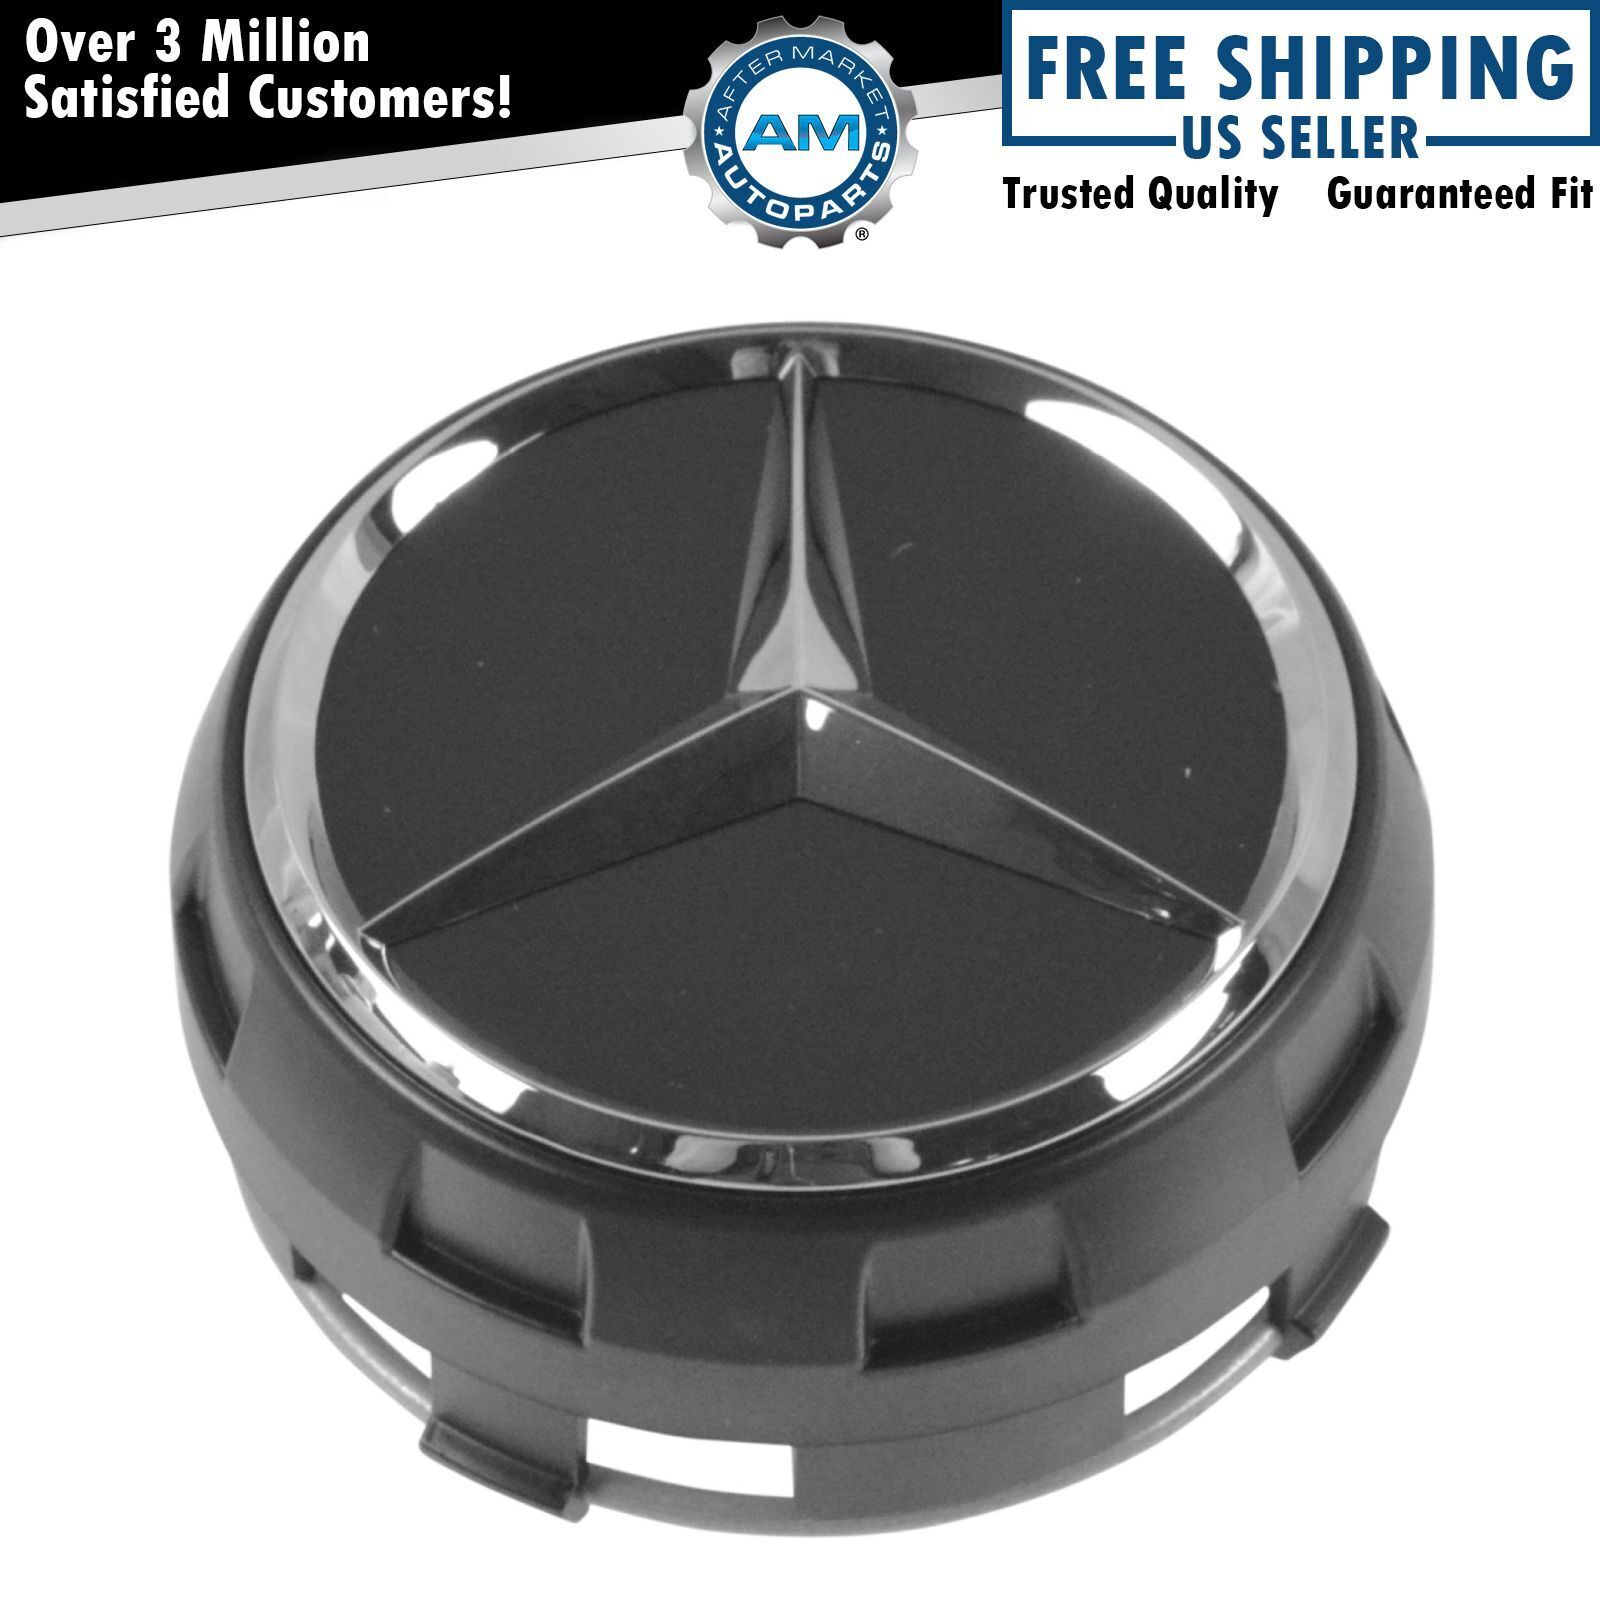 OEM 00040009009283 Raised Chrome & Black Wheel Center Cap for Mercedes Benz